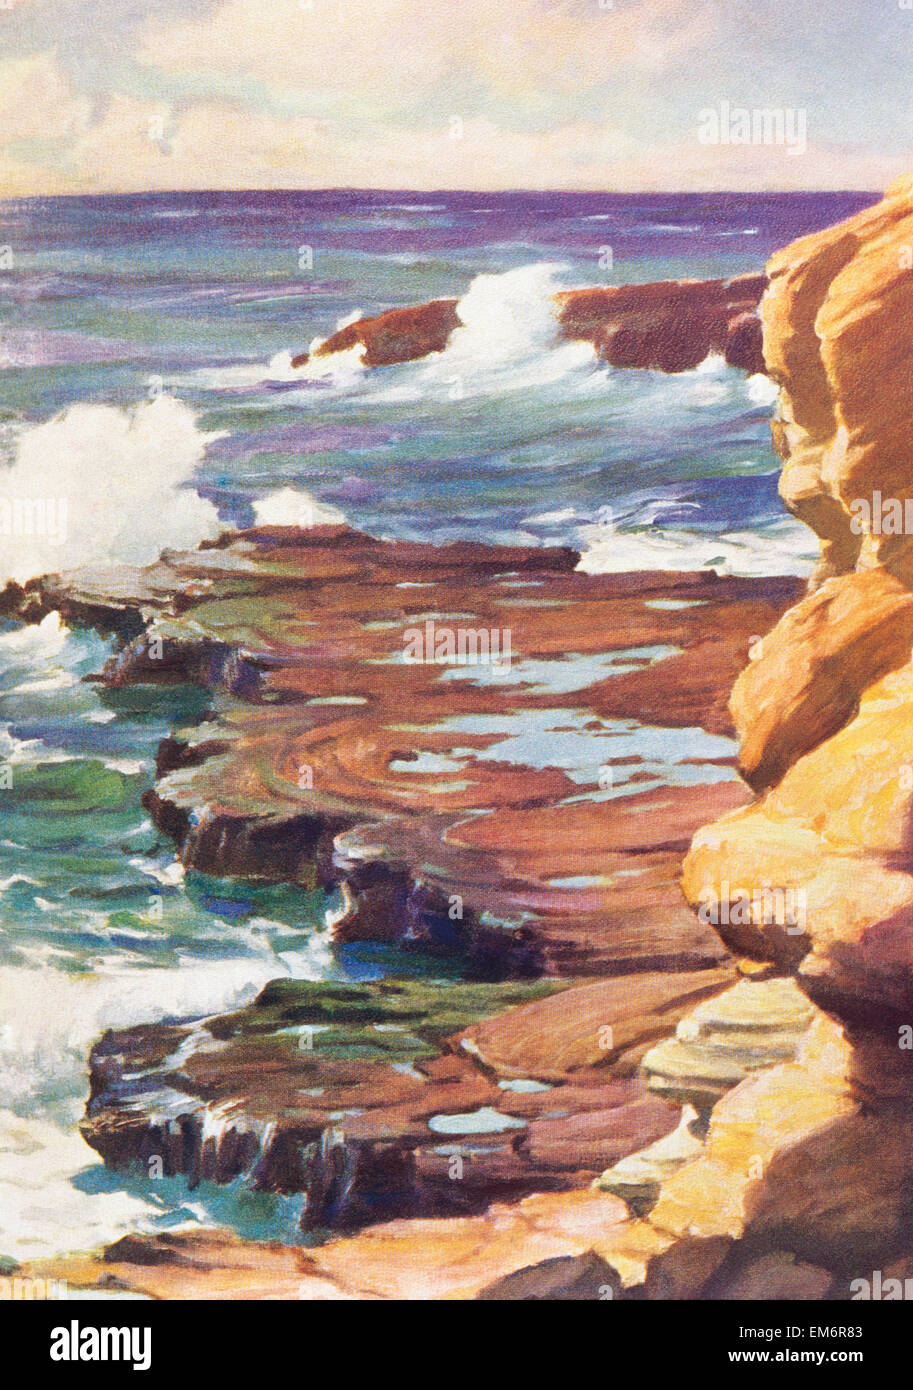 C. 1936, Art By J.H. Sharp, Hawaii, Oahu, Waves Crashing On Rocky Coastline. Stock Photo